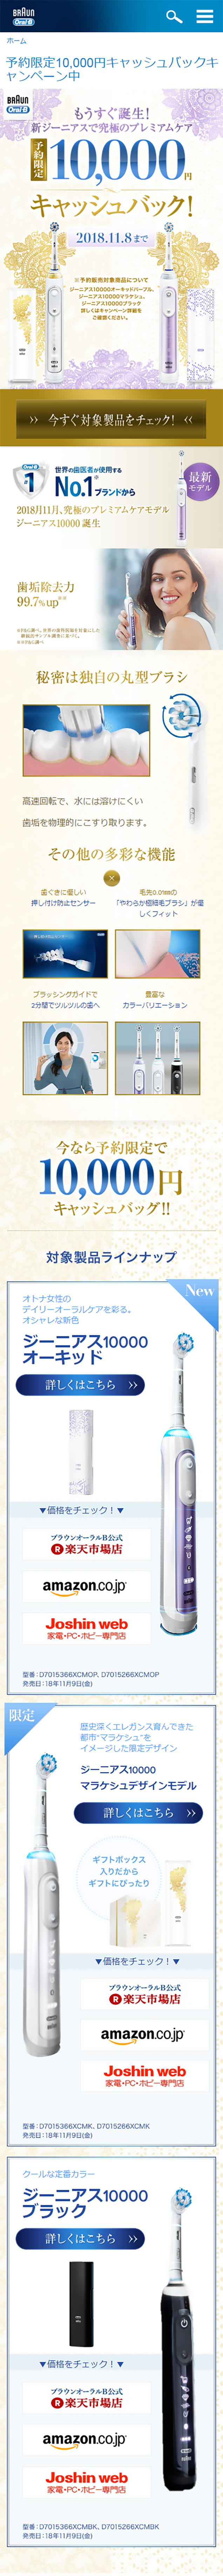 予約限定10,000円キャッシュバックキャンペーン_sp_1